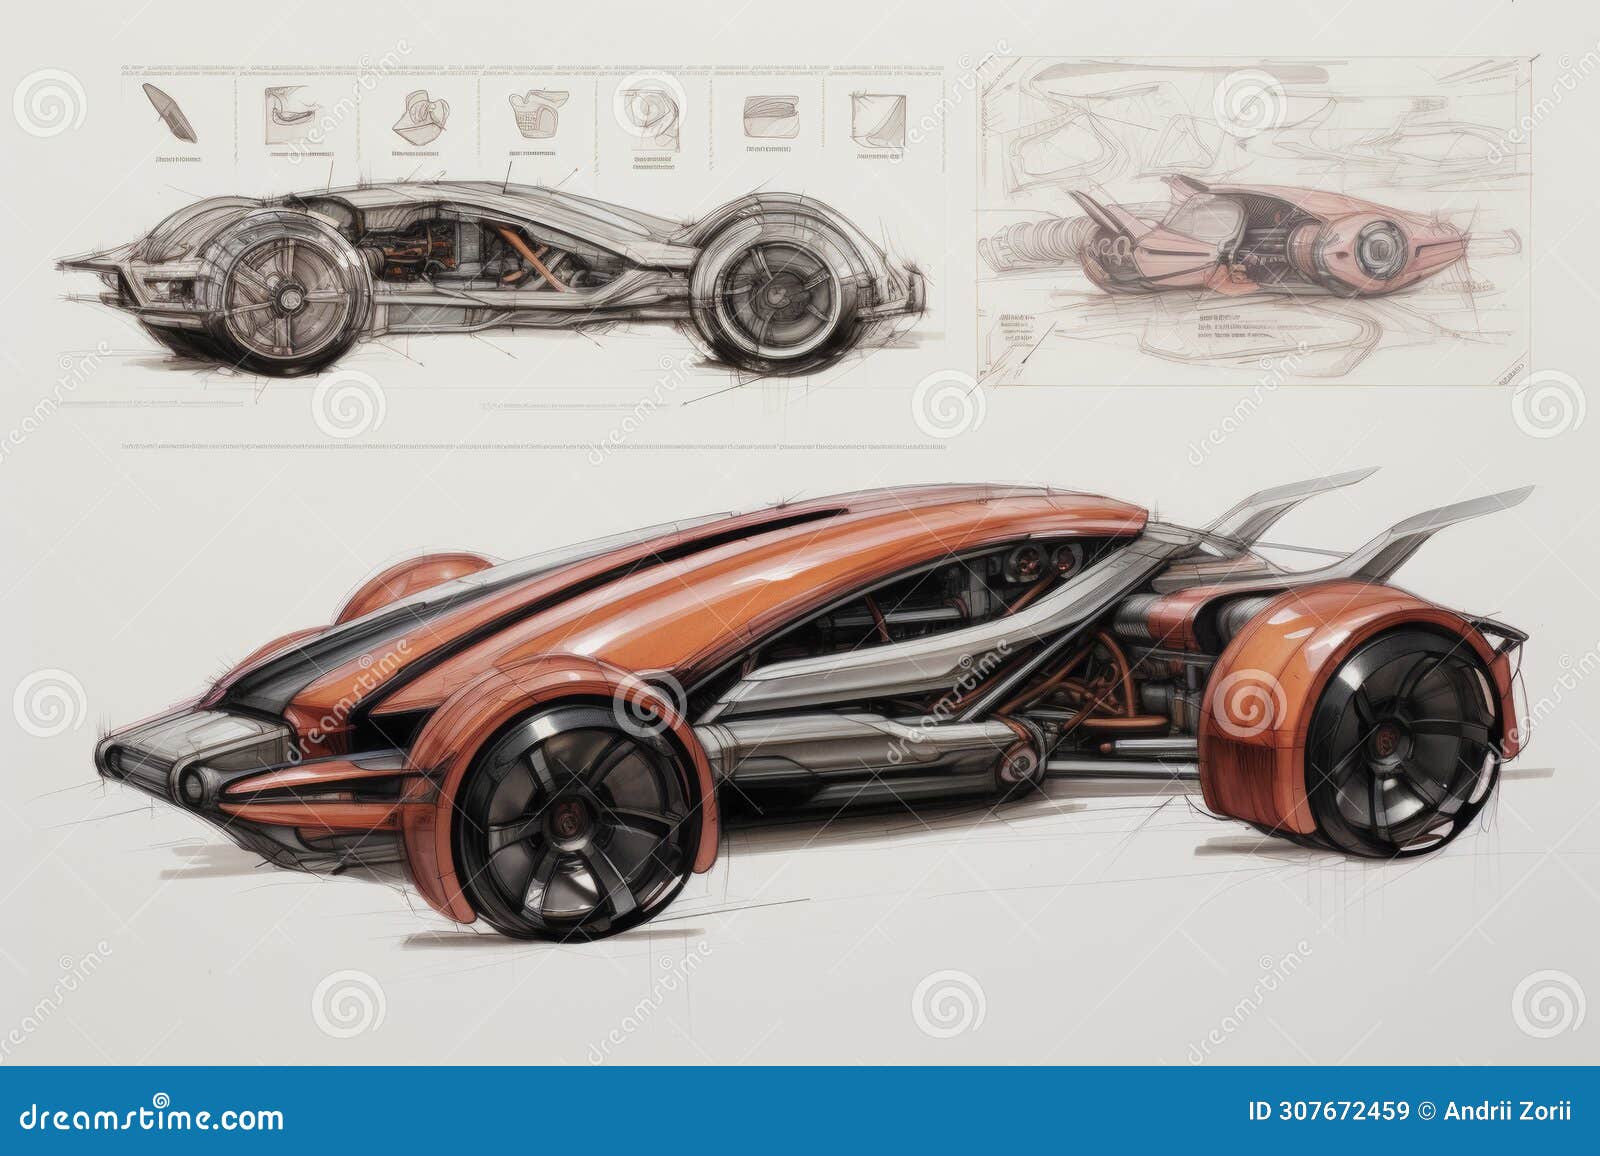 Automotive Design | Automotive Exterior Design Company | Creative Wave